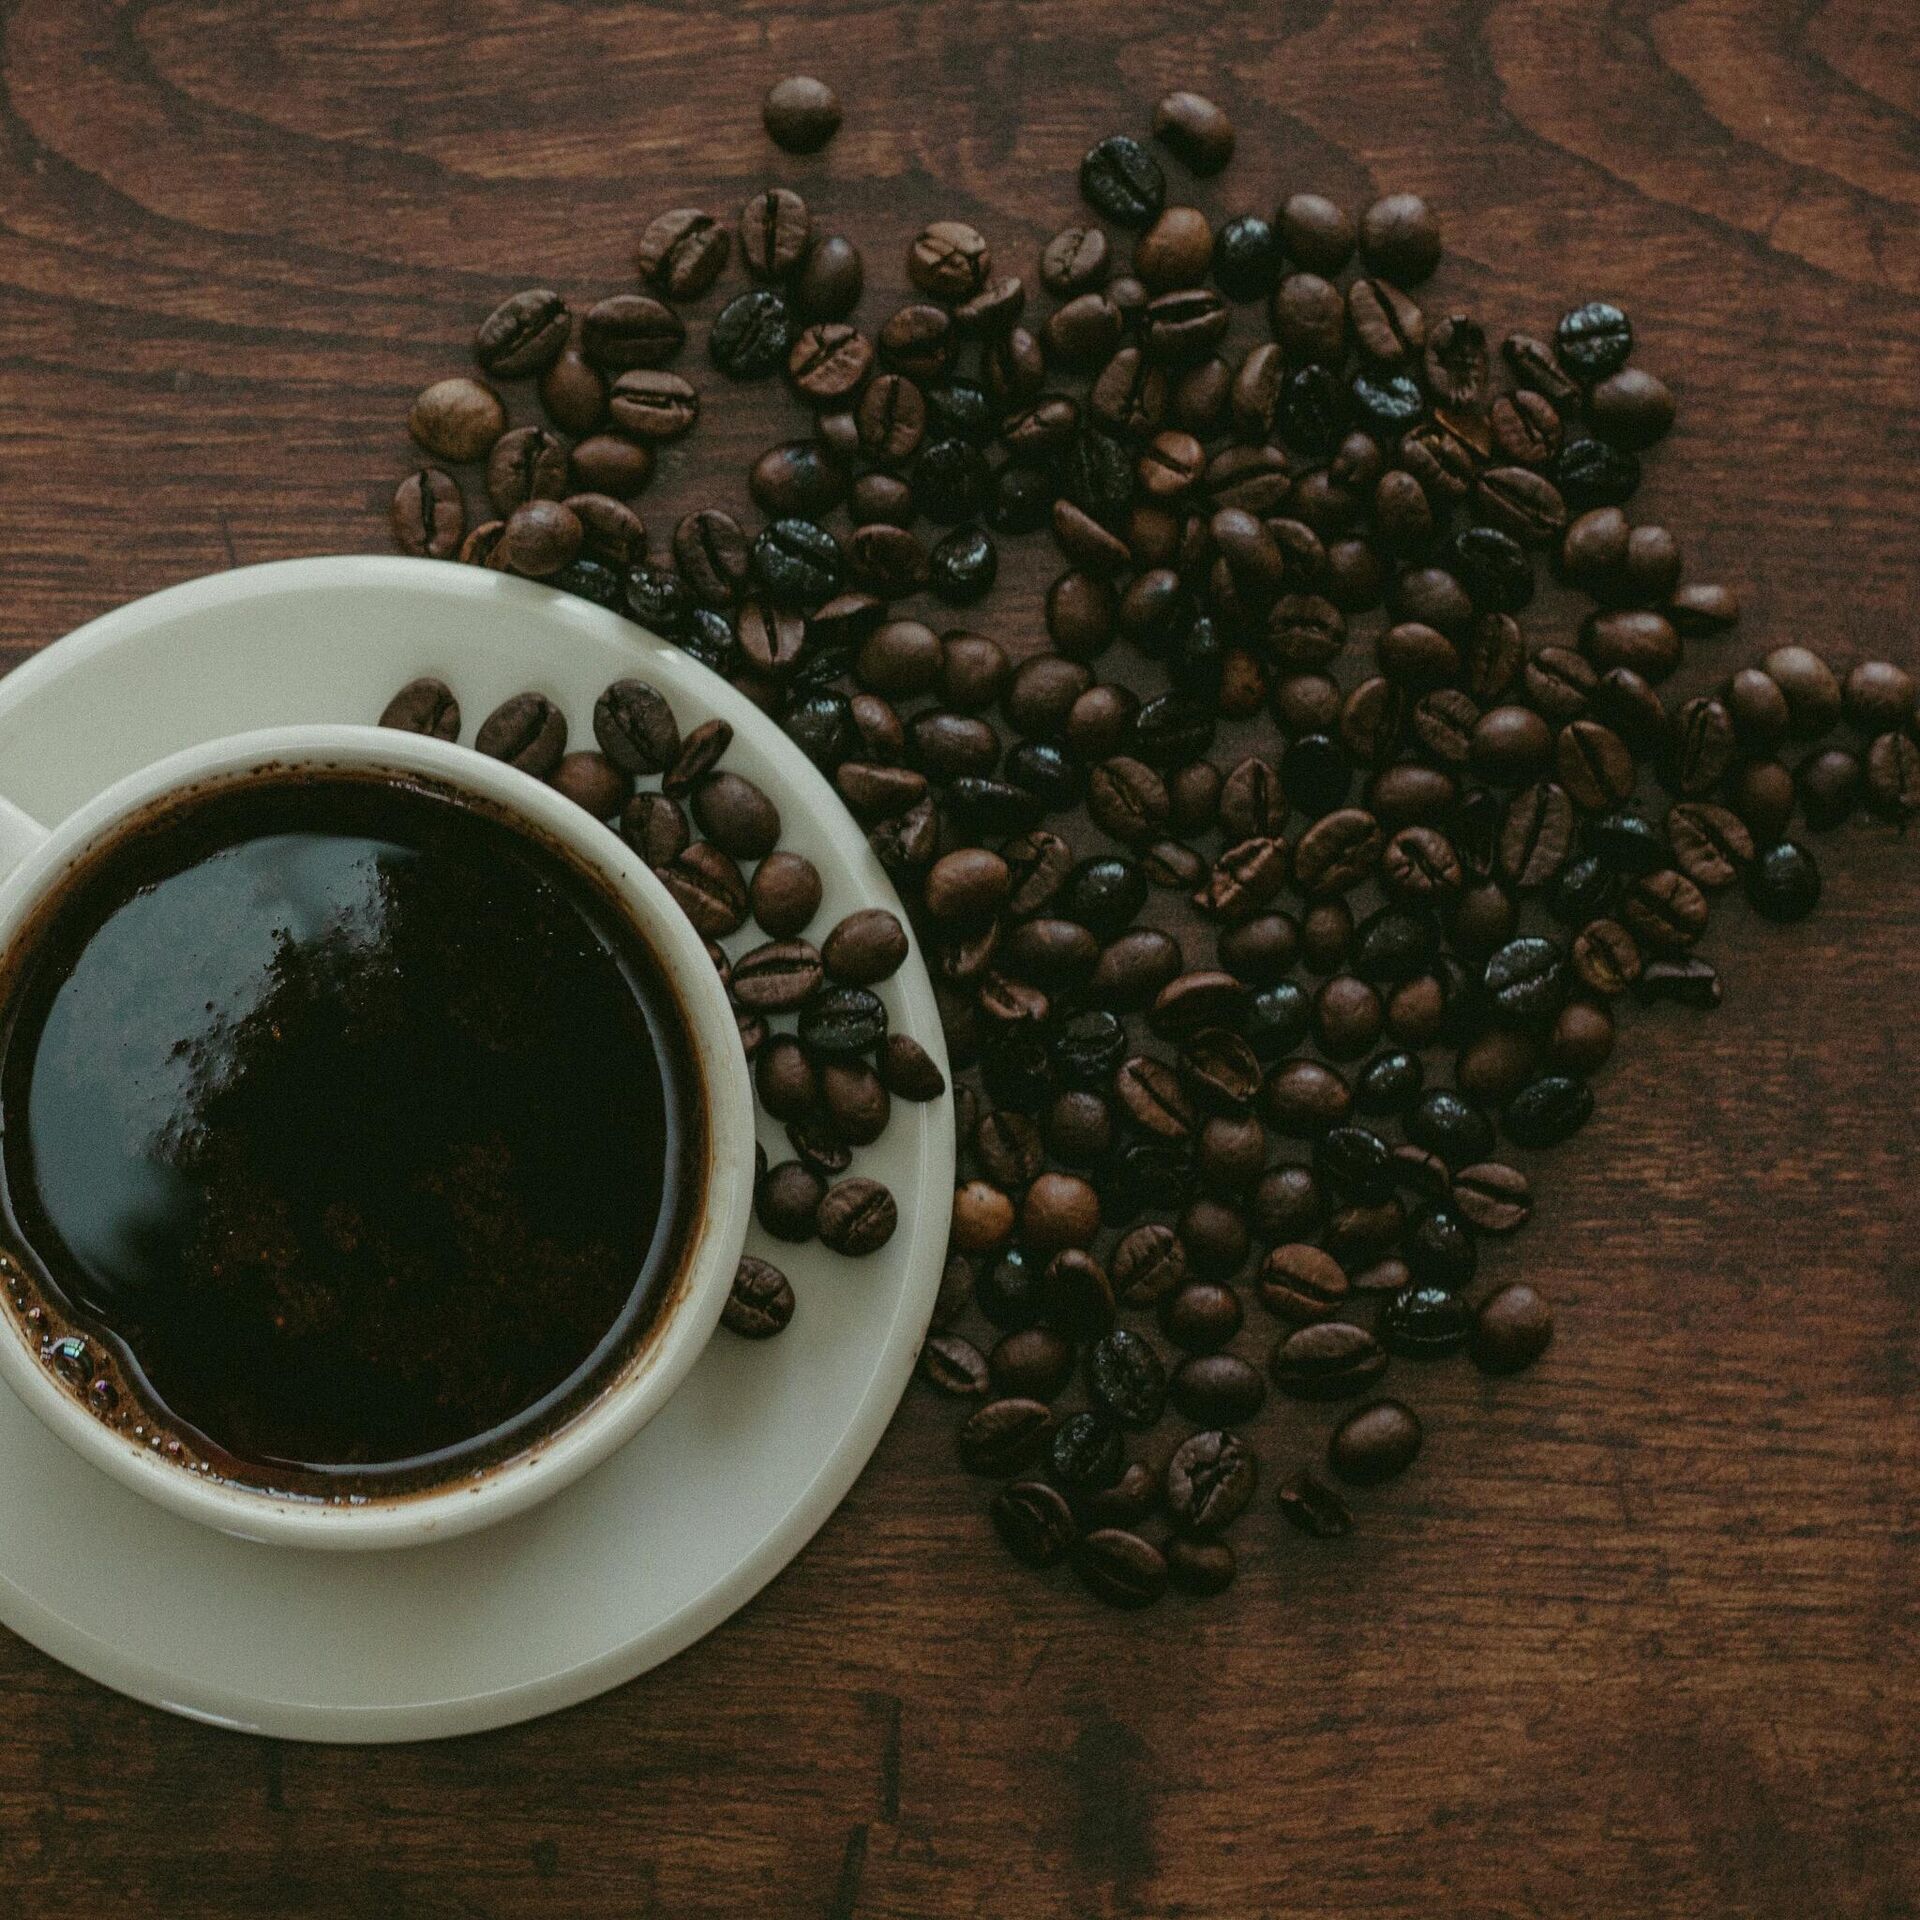 La Mundial - ¡Moler los granos de café nunca fue más fácil para obtener una  deliciosa taza de café! ☕️¿Qué te parece nuestro molino de café? 🤩  #facildeacceder #facildeelegir #facildeutilizar #divertido #Honduras #